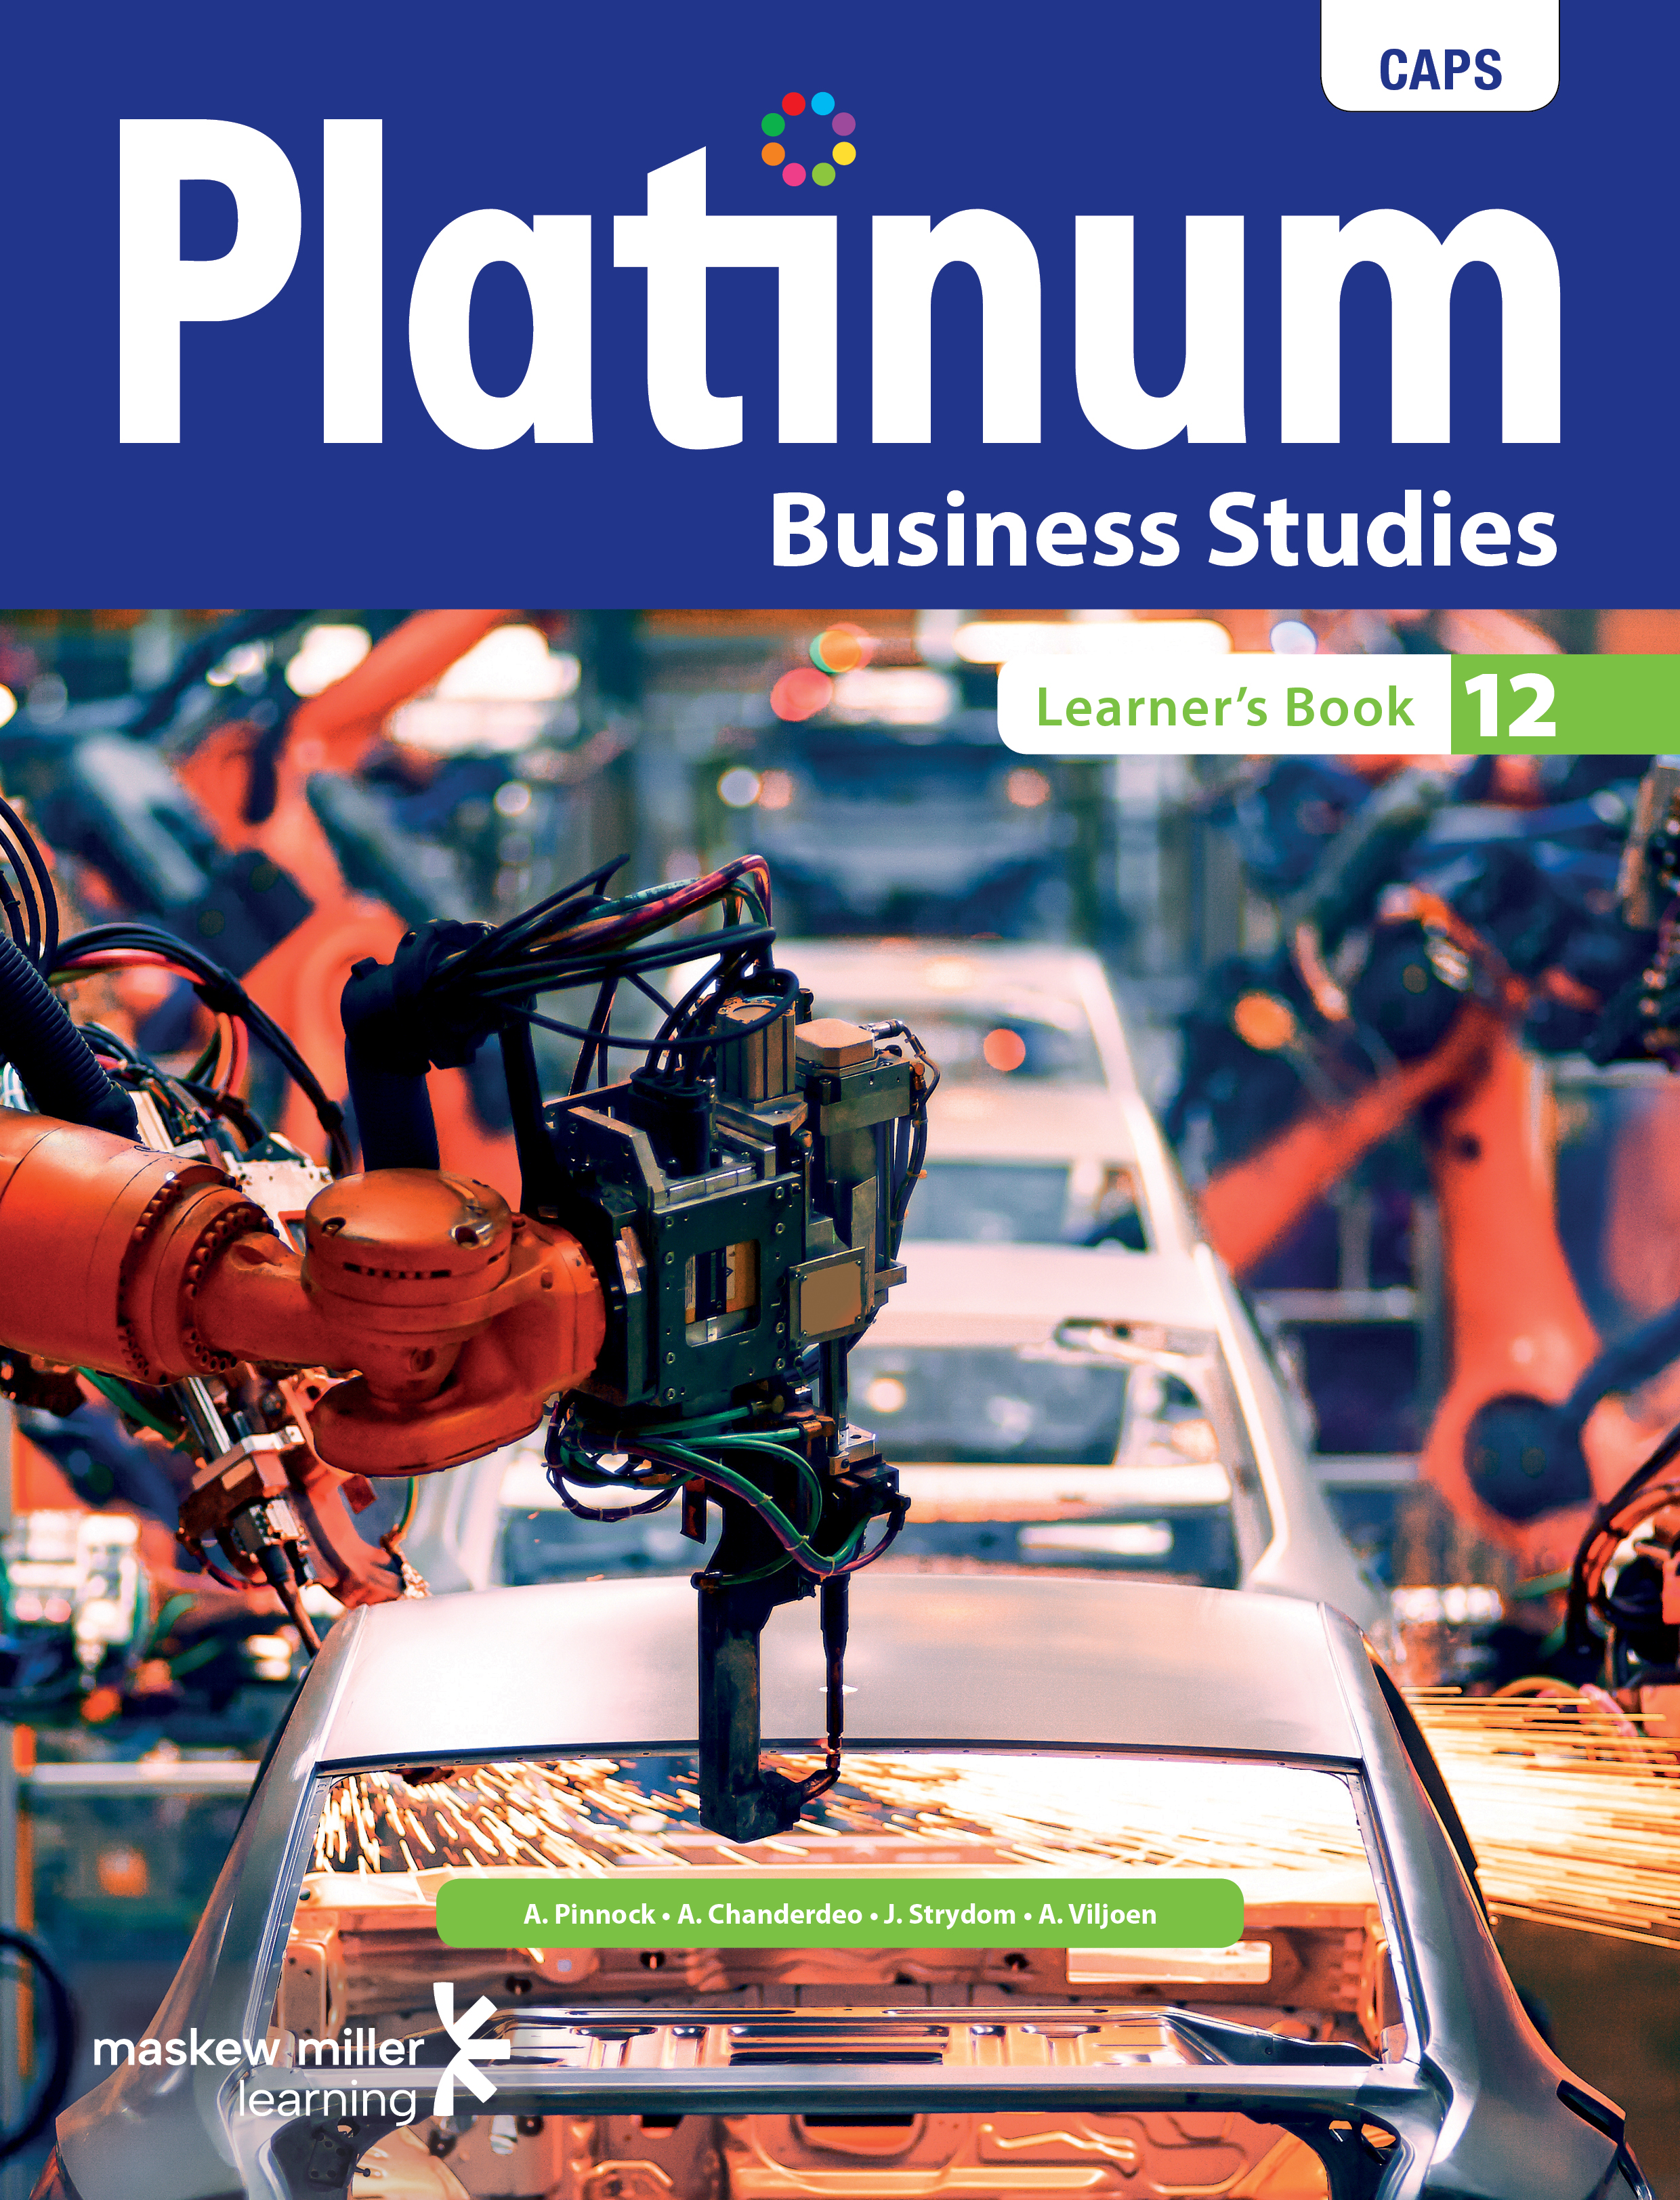 Picture of Platinum business studies CAPS